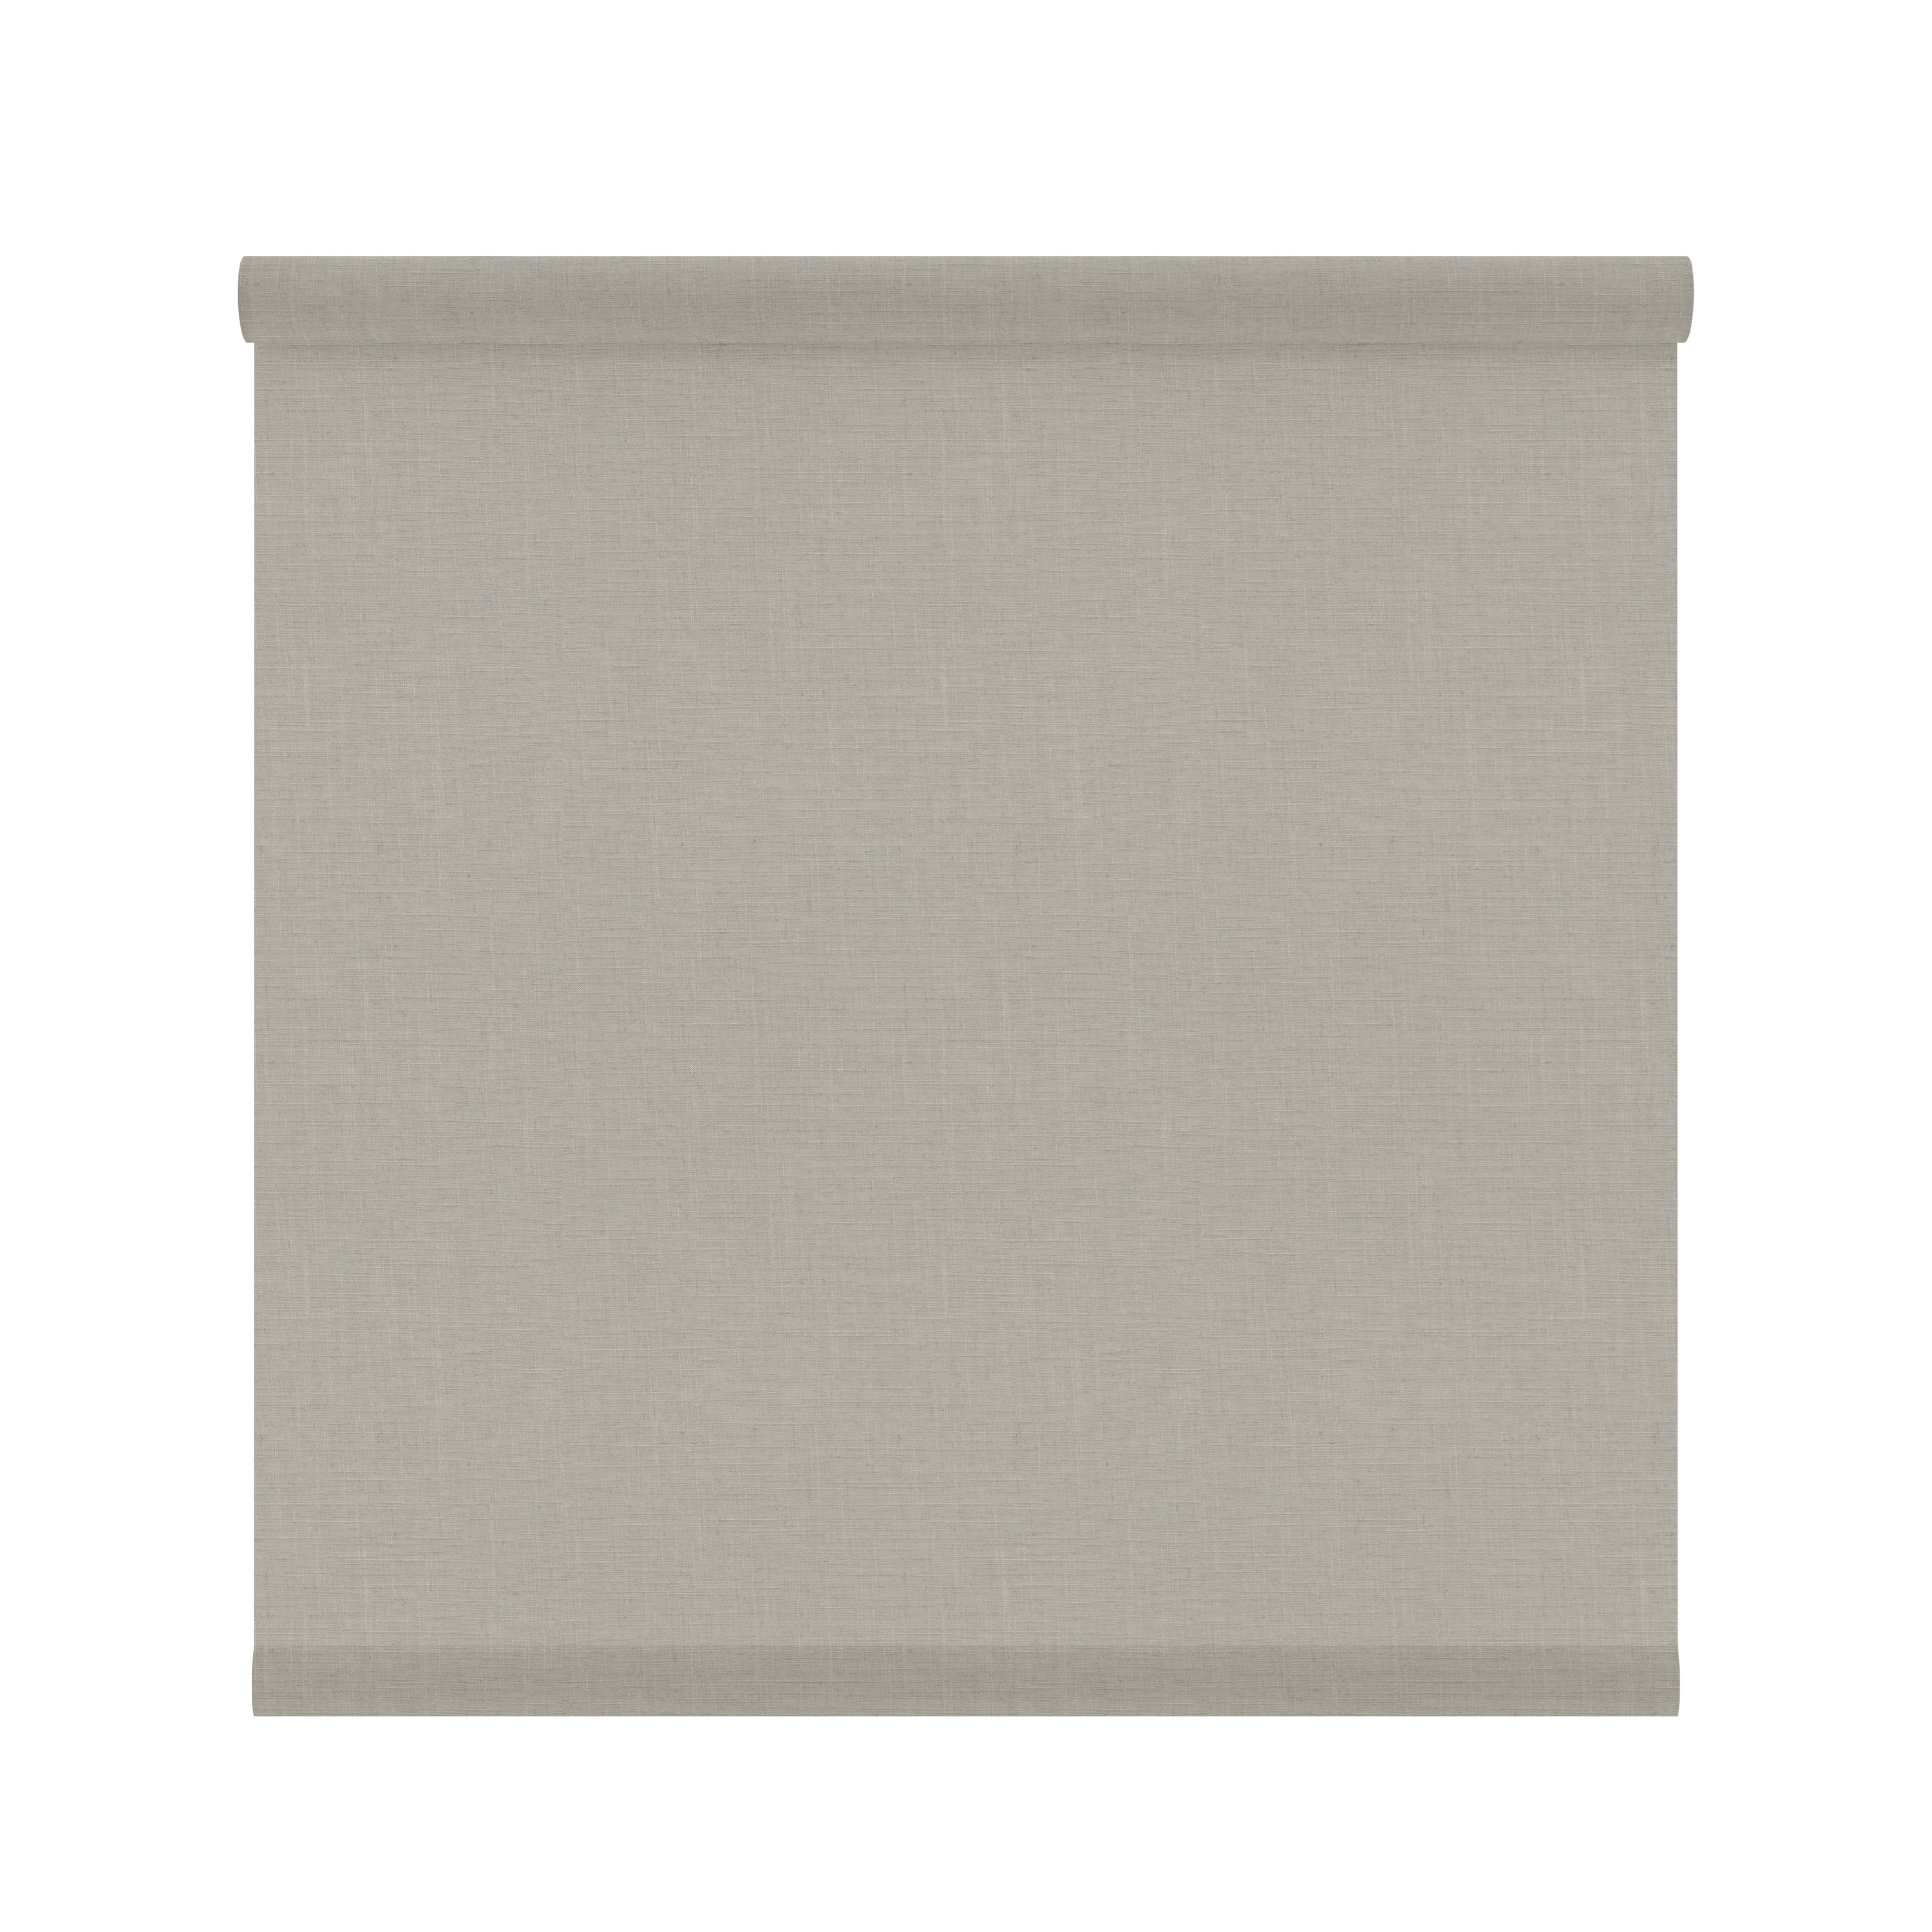 Tessuto per tende a rullo filtrante INSPIRE Brisbane beige 62 x 190 cm - 2